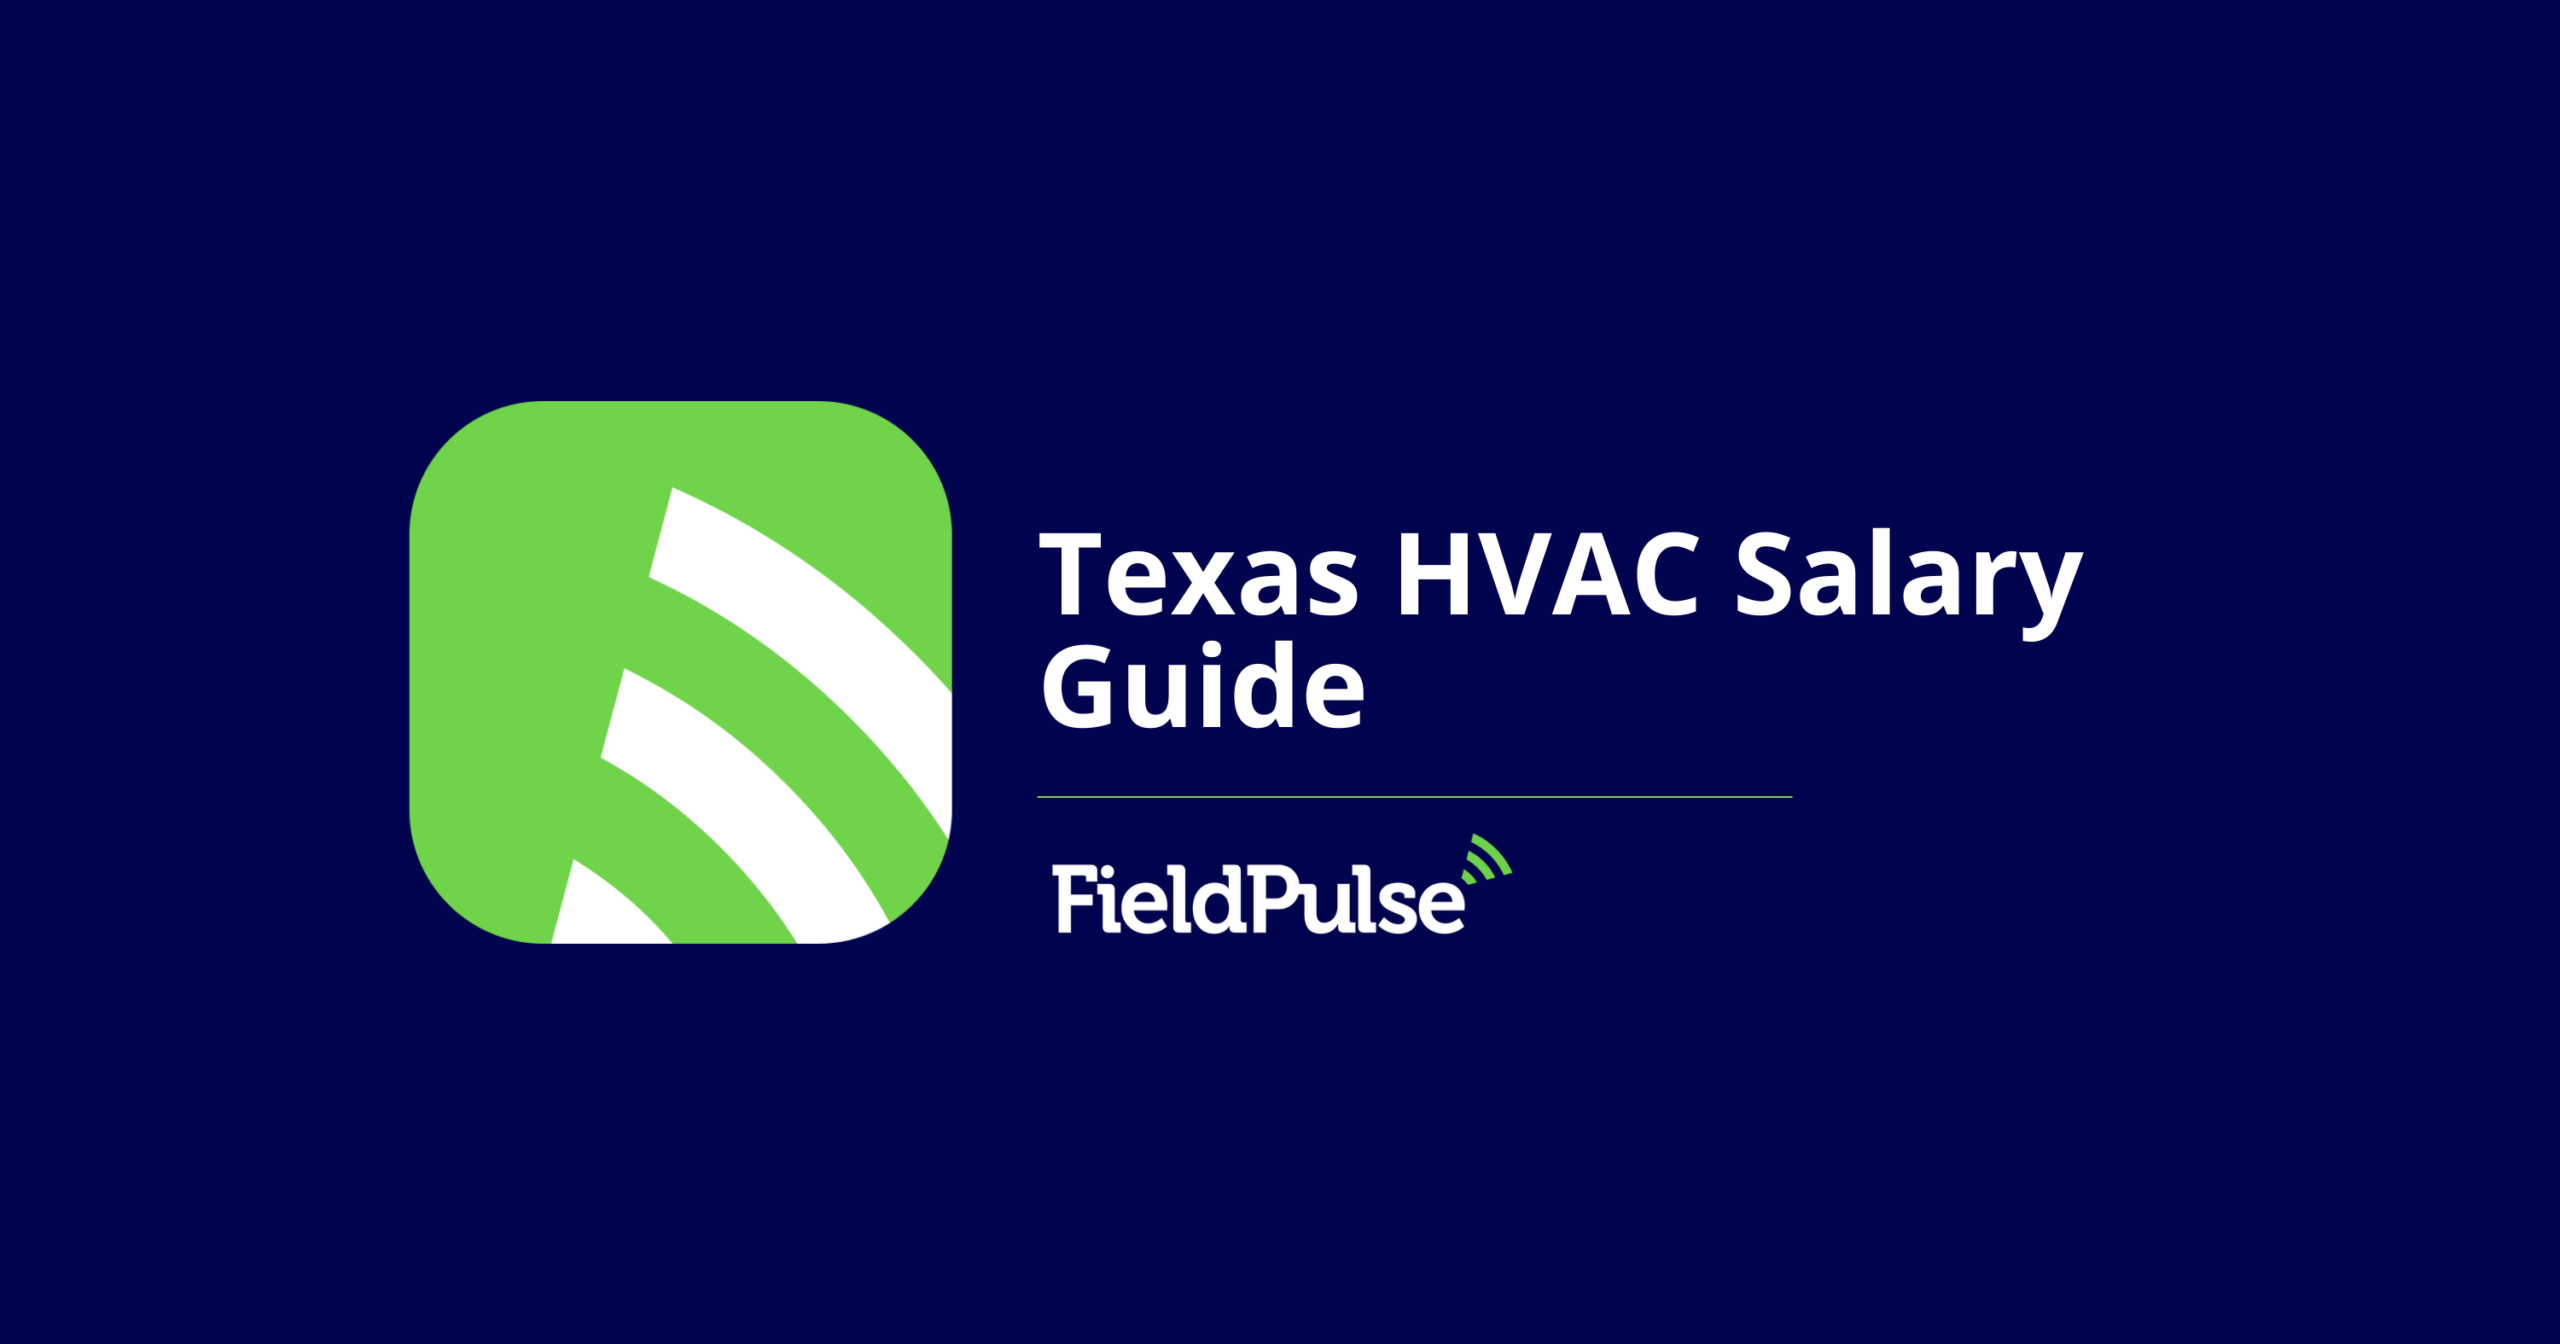 Texas HVAC Salary Guide